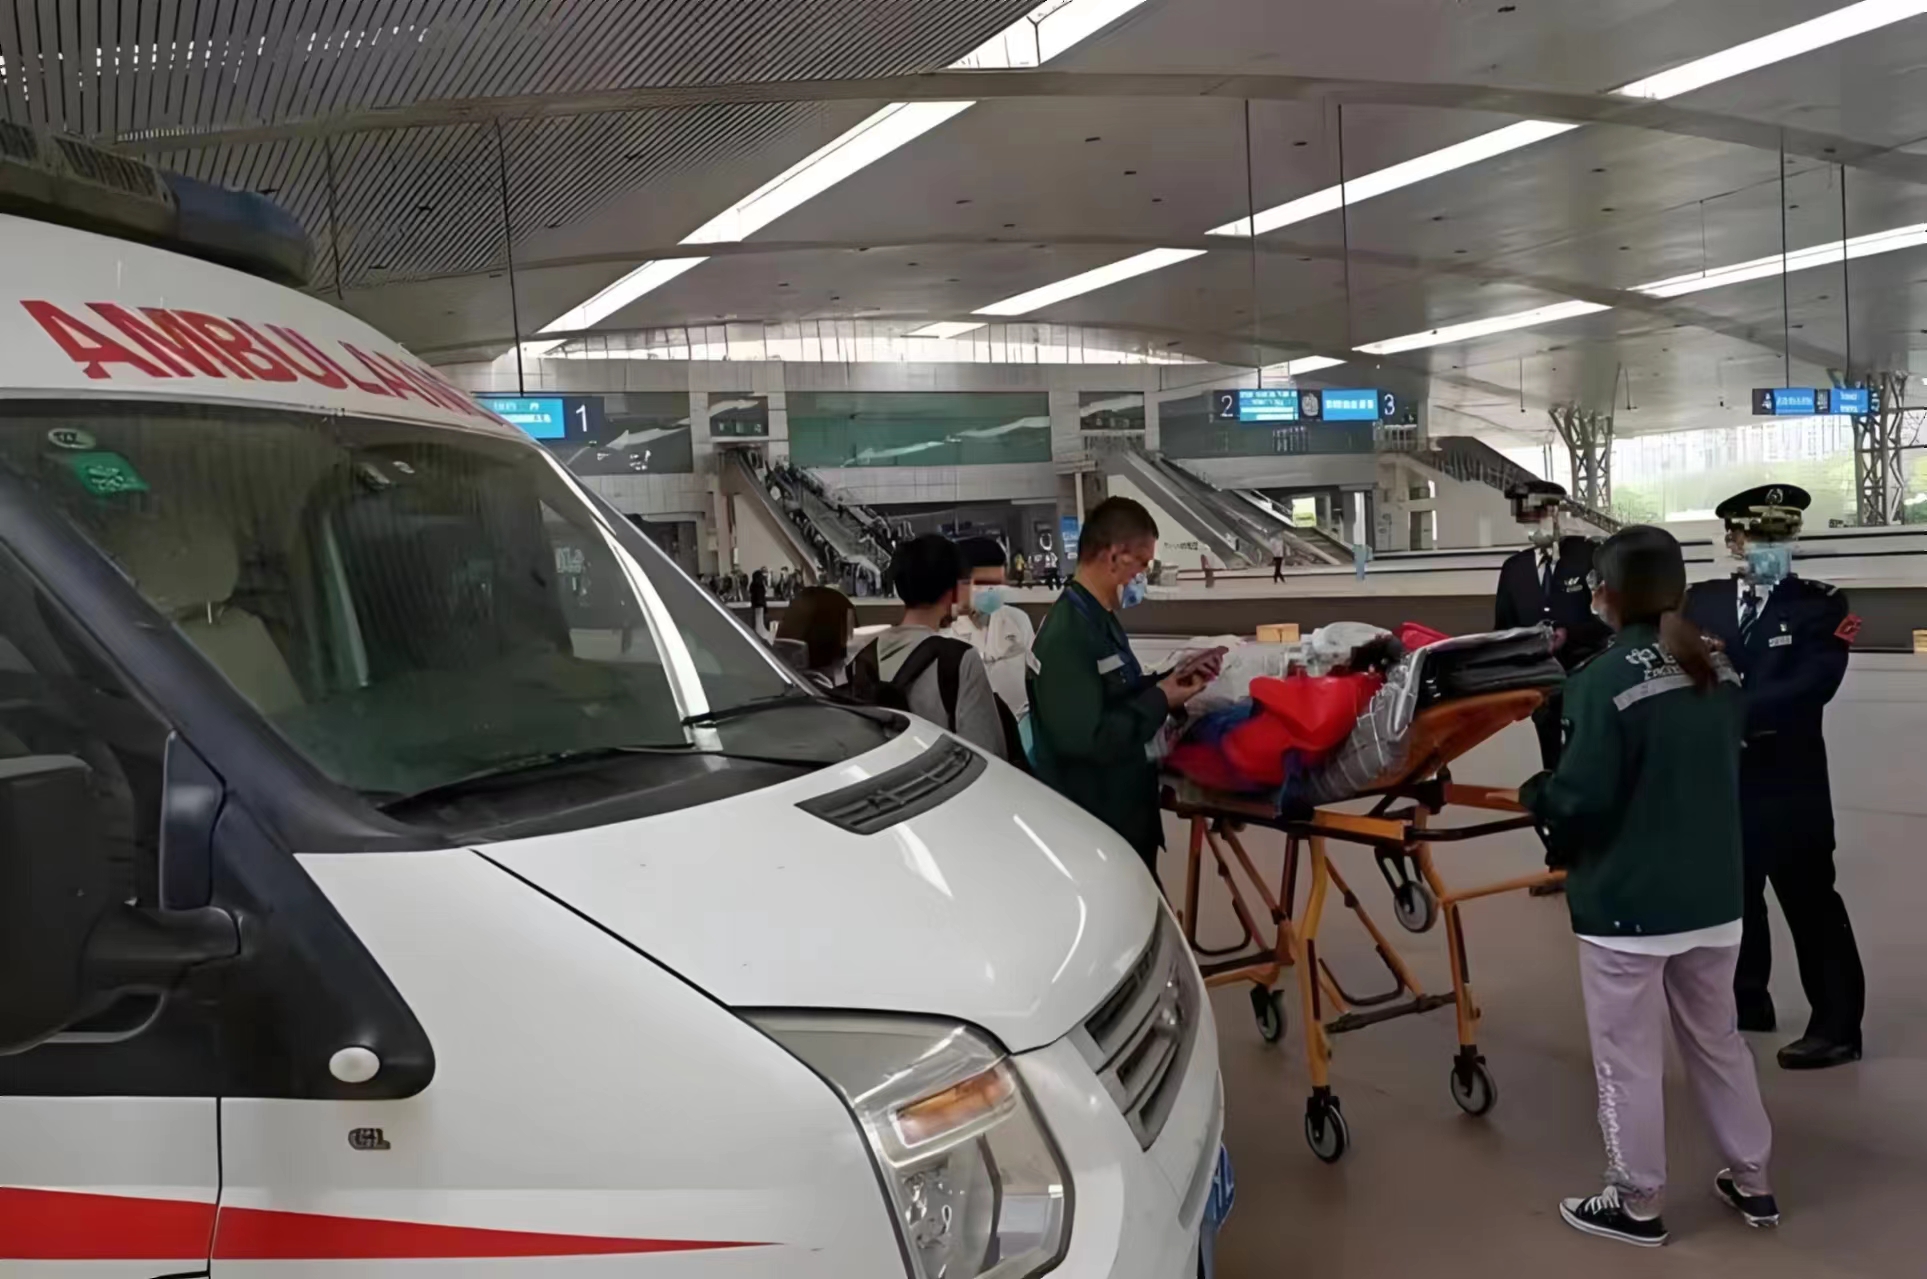 郭楞120救护车出院-120救护车出租--救护服务中心